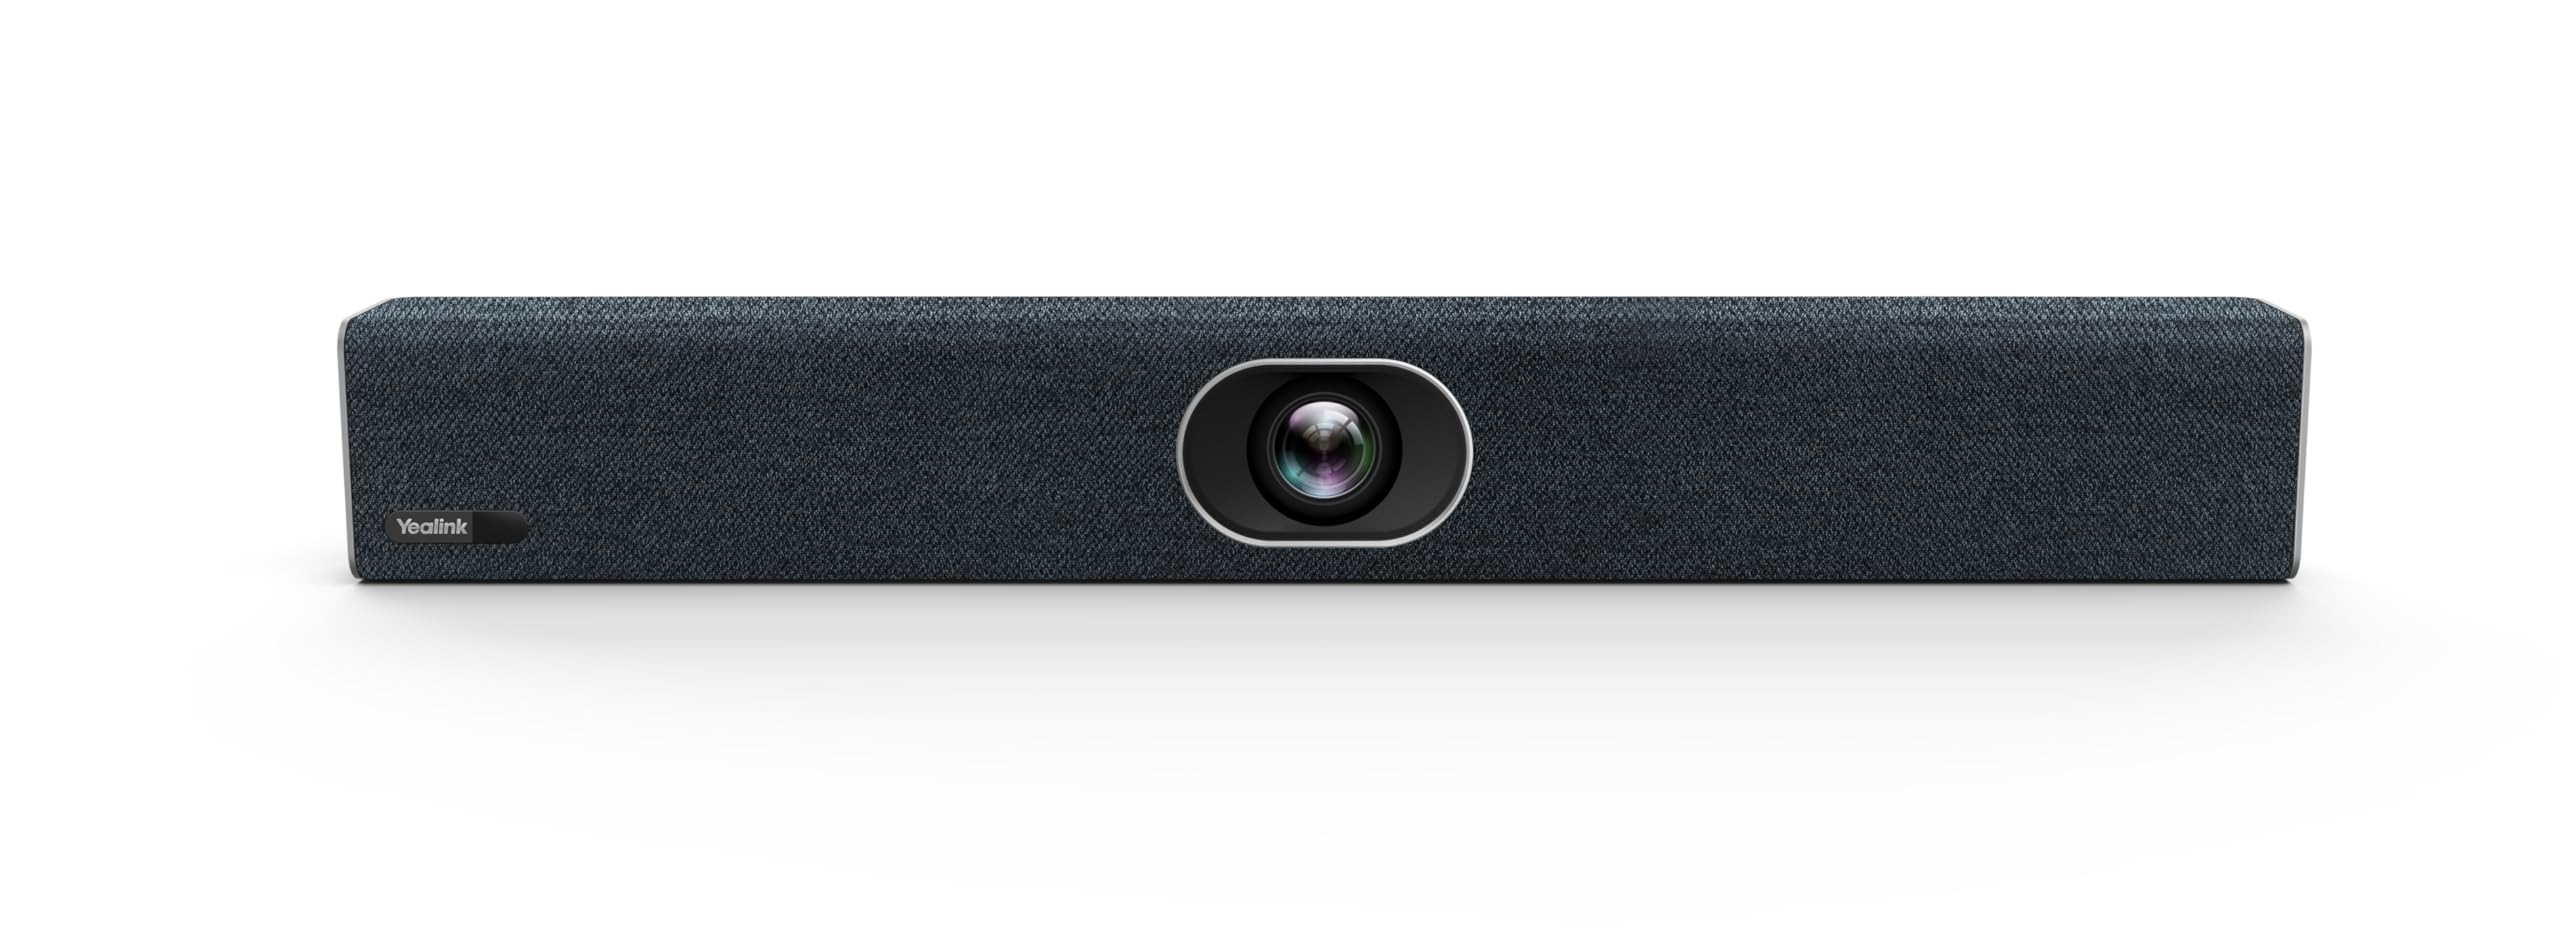 Yealink MVC Room System Zubehör UVC40 Videokonferenz Kamera 20MP (integ. Lautsprecher) All-in-One USB-Video-, Meeting Bar für kleine Besprechungsräume